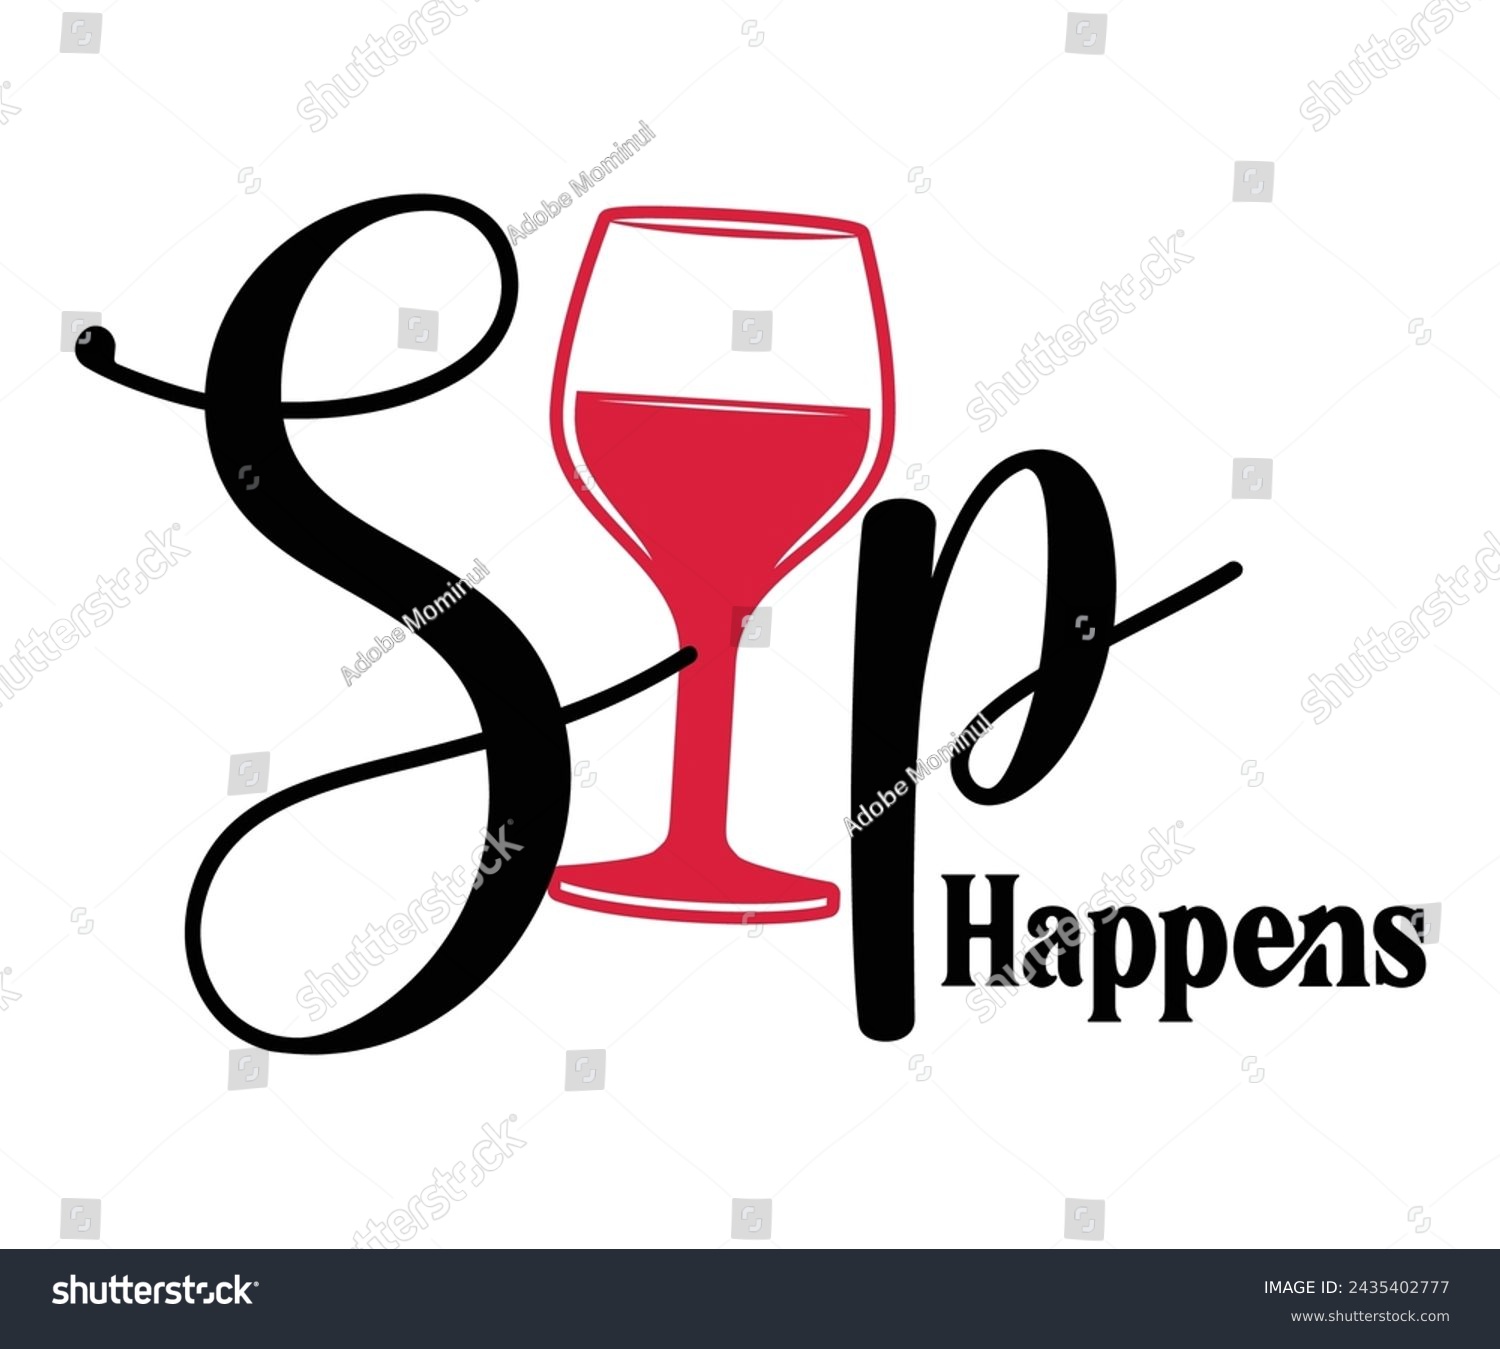 SVG of Sip Happens Svg,T-shirt Design,Wine Svg,Drinking Svg,Wine Quotes Svg,Wine Lover,Wine Time Svg,Wine Glass Svg,Funny Wine Svg,Beer Svg,Cut File svg